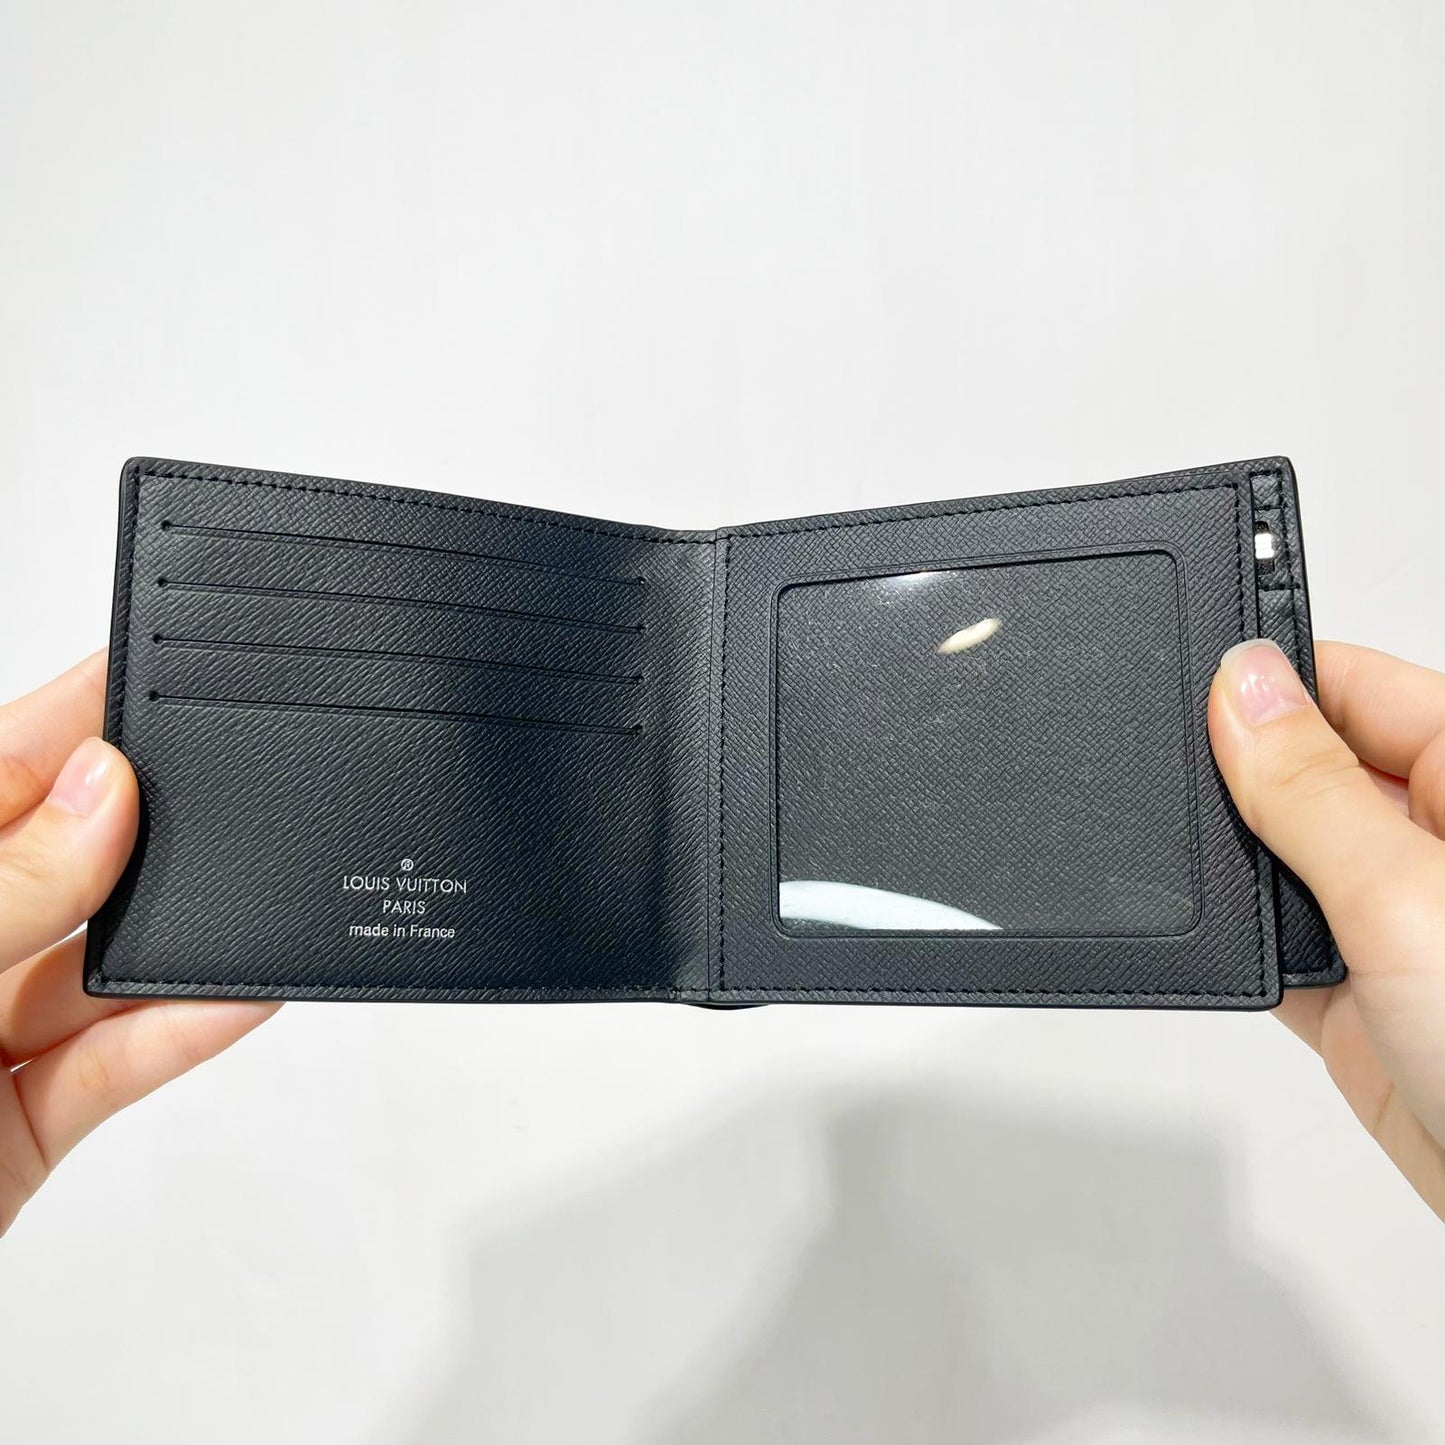 Shop Louis Vuitton TAIGA Amerigo wallet (M62045) by sunnyfunny